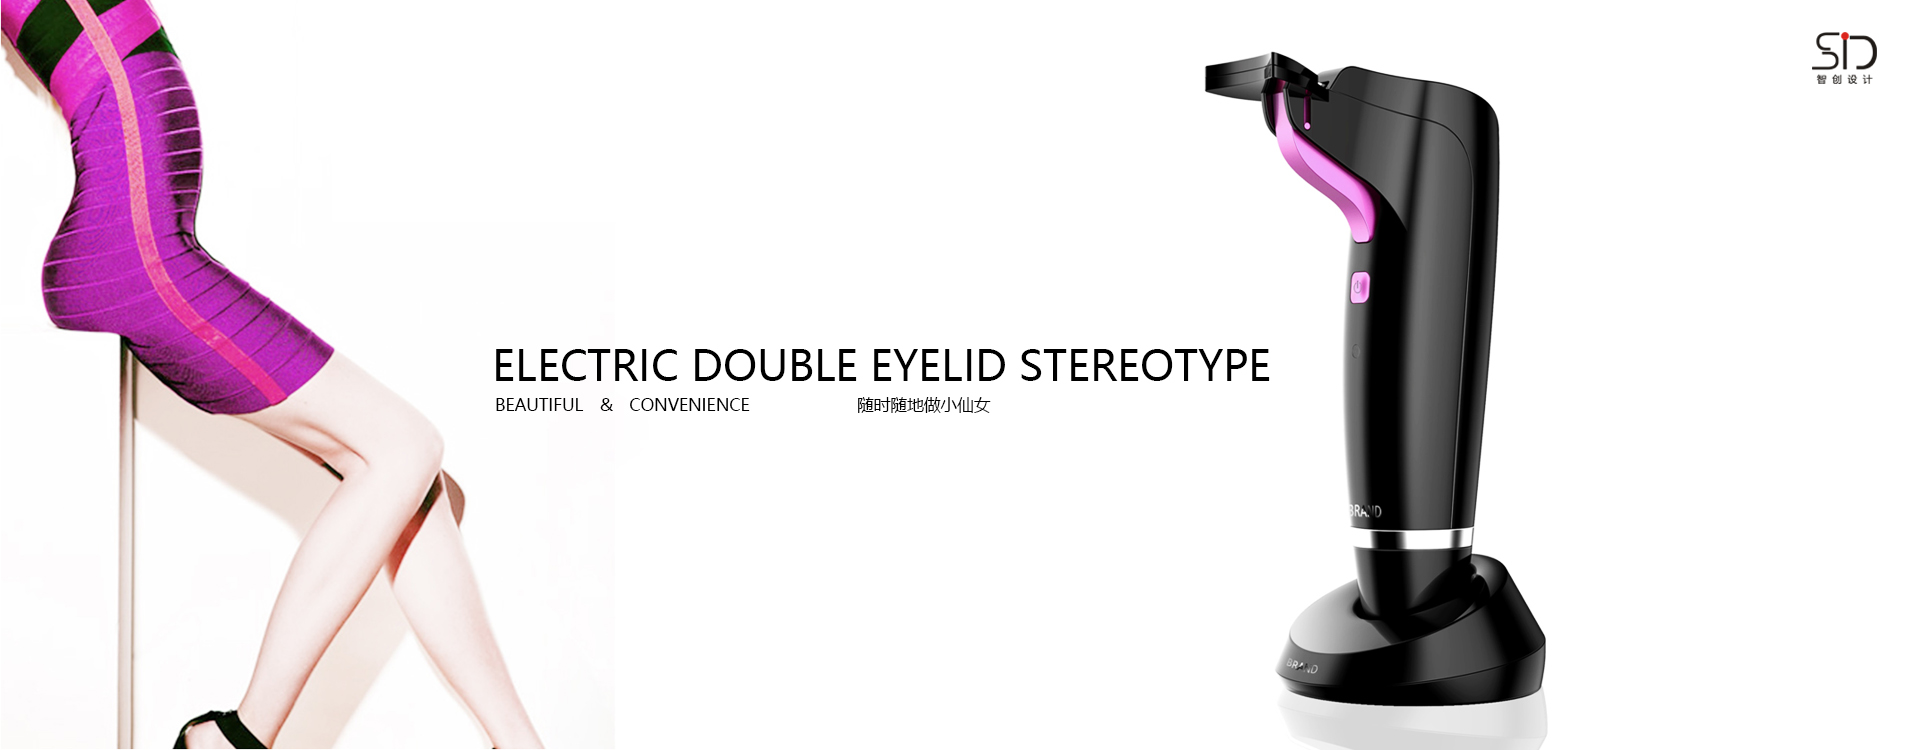 电动双眼皮定型器 消费电子产品设计/外观设计/结构设计